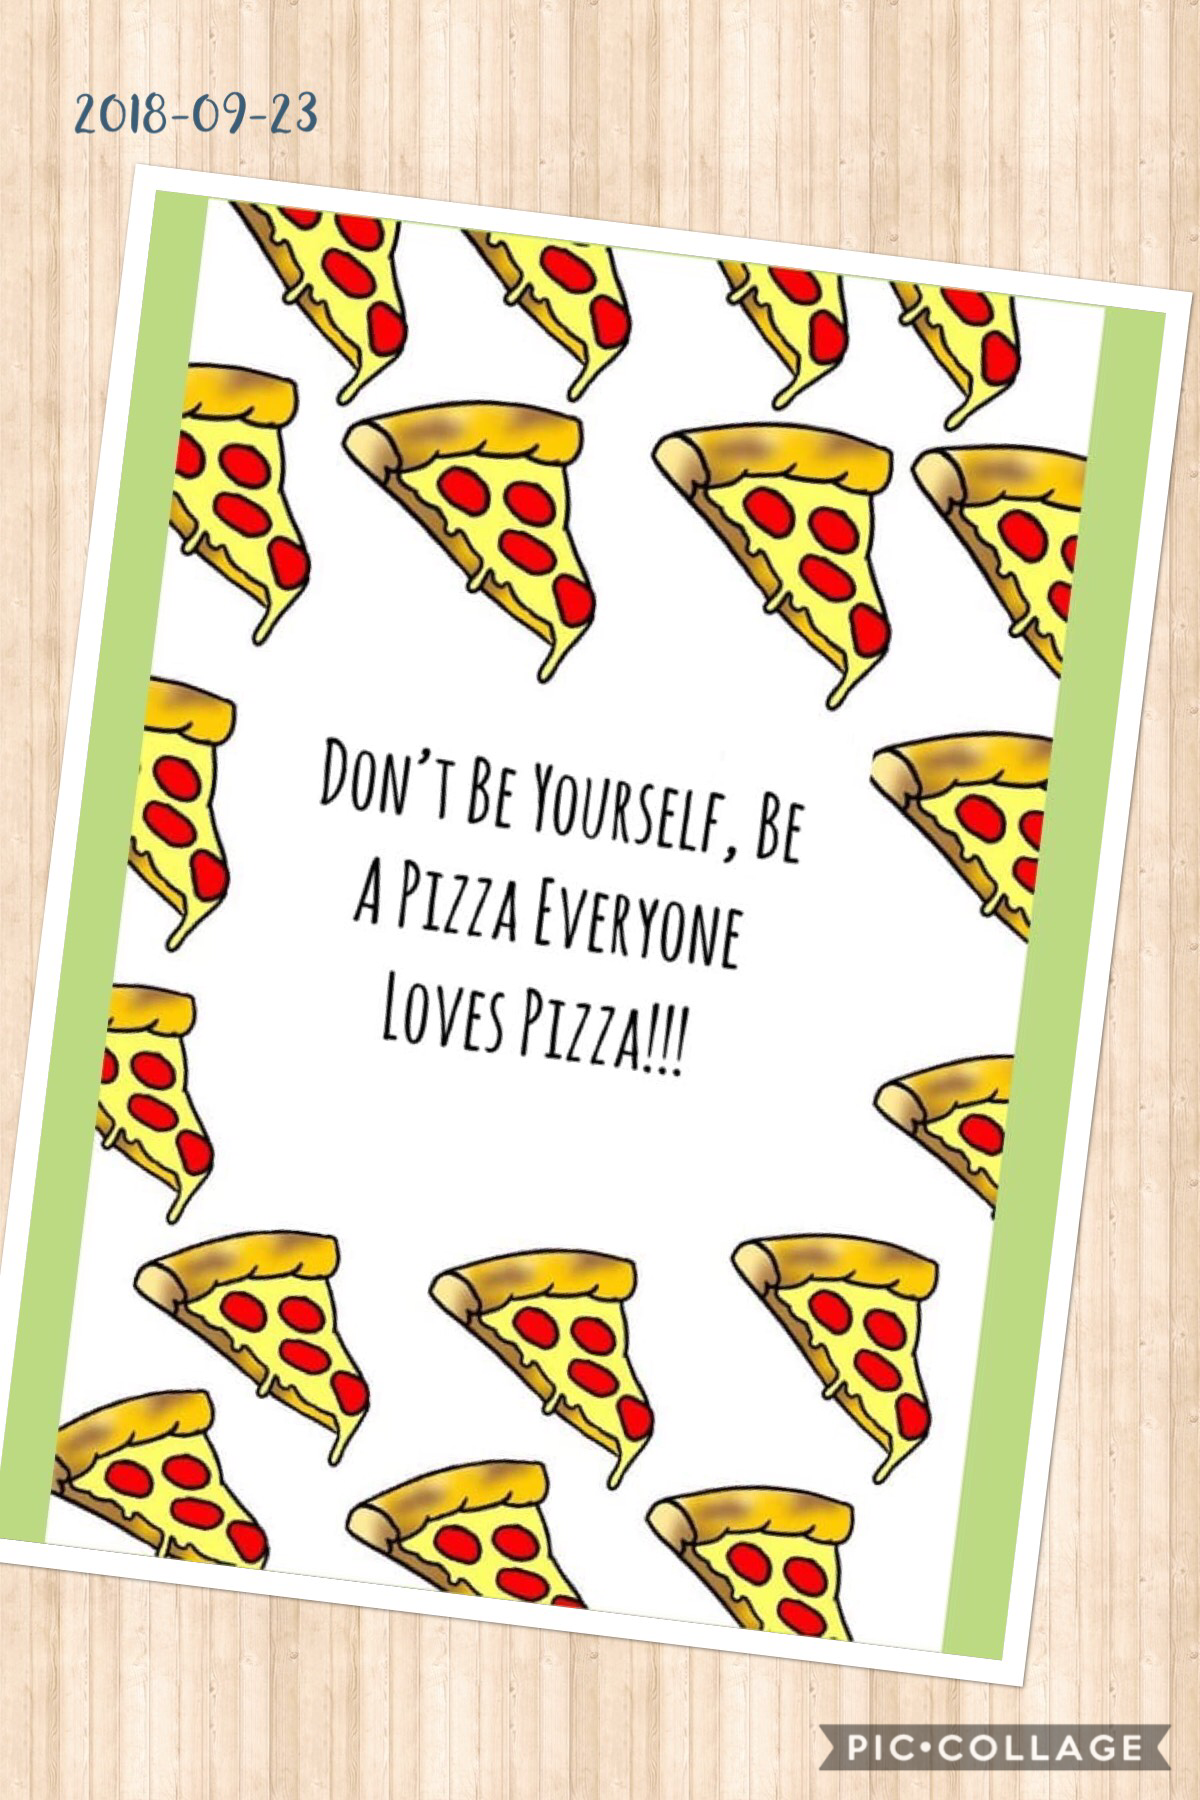 Love Pizza!!